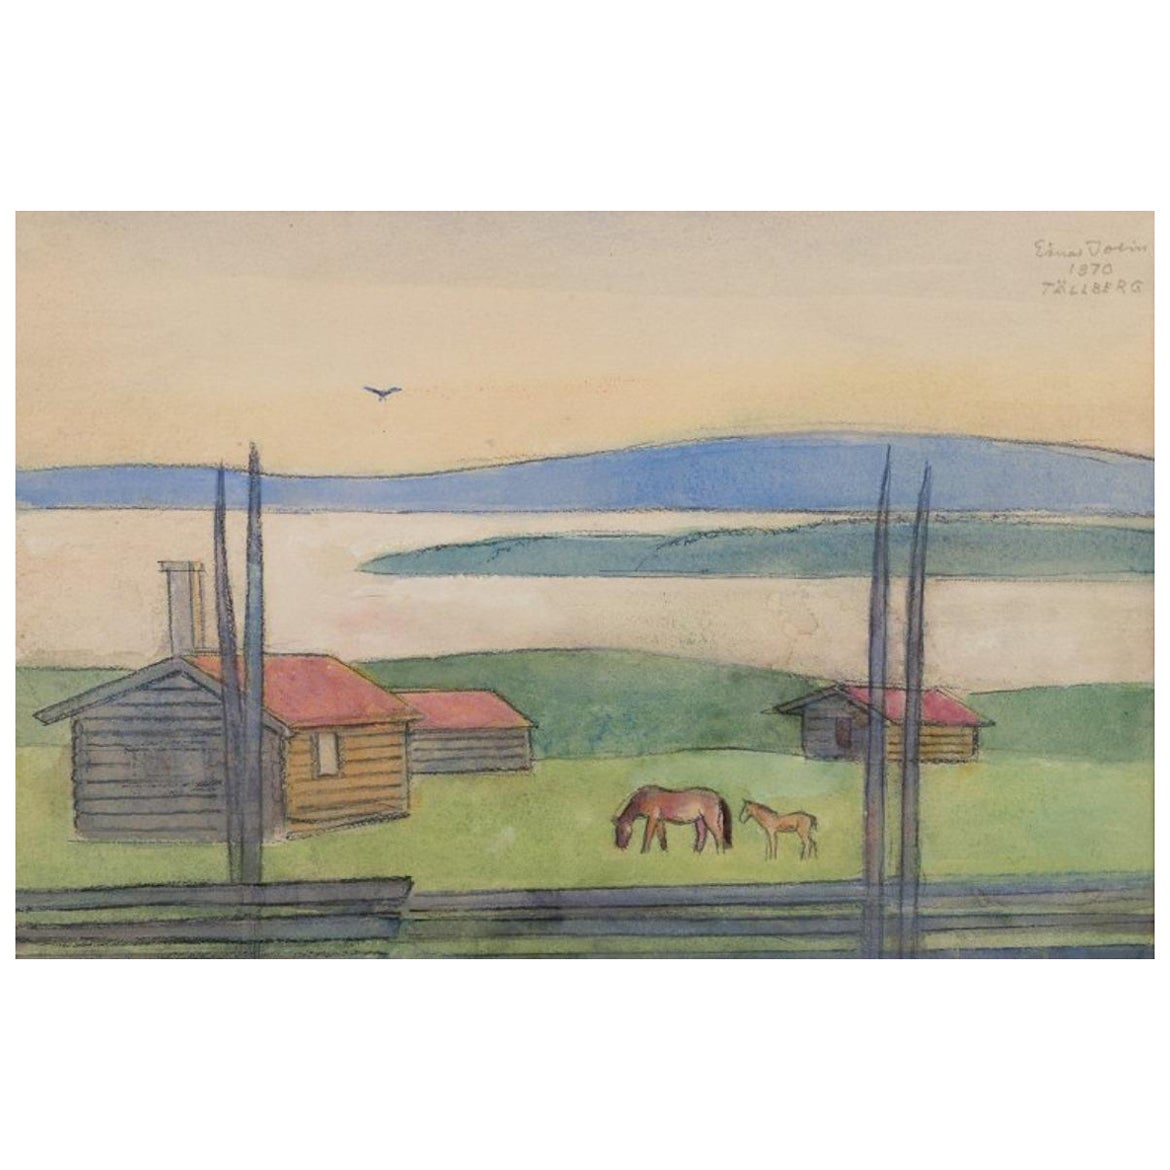 Einar Jolin, gut gelisteter schwedischer Künstler. Ölpastell auf Papier. Schwedische Landschaft.